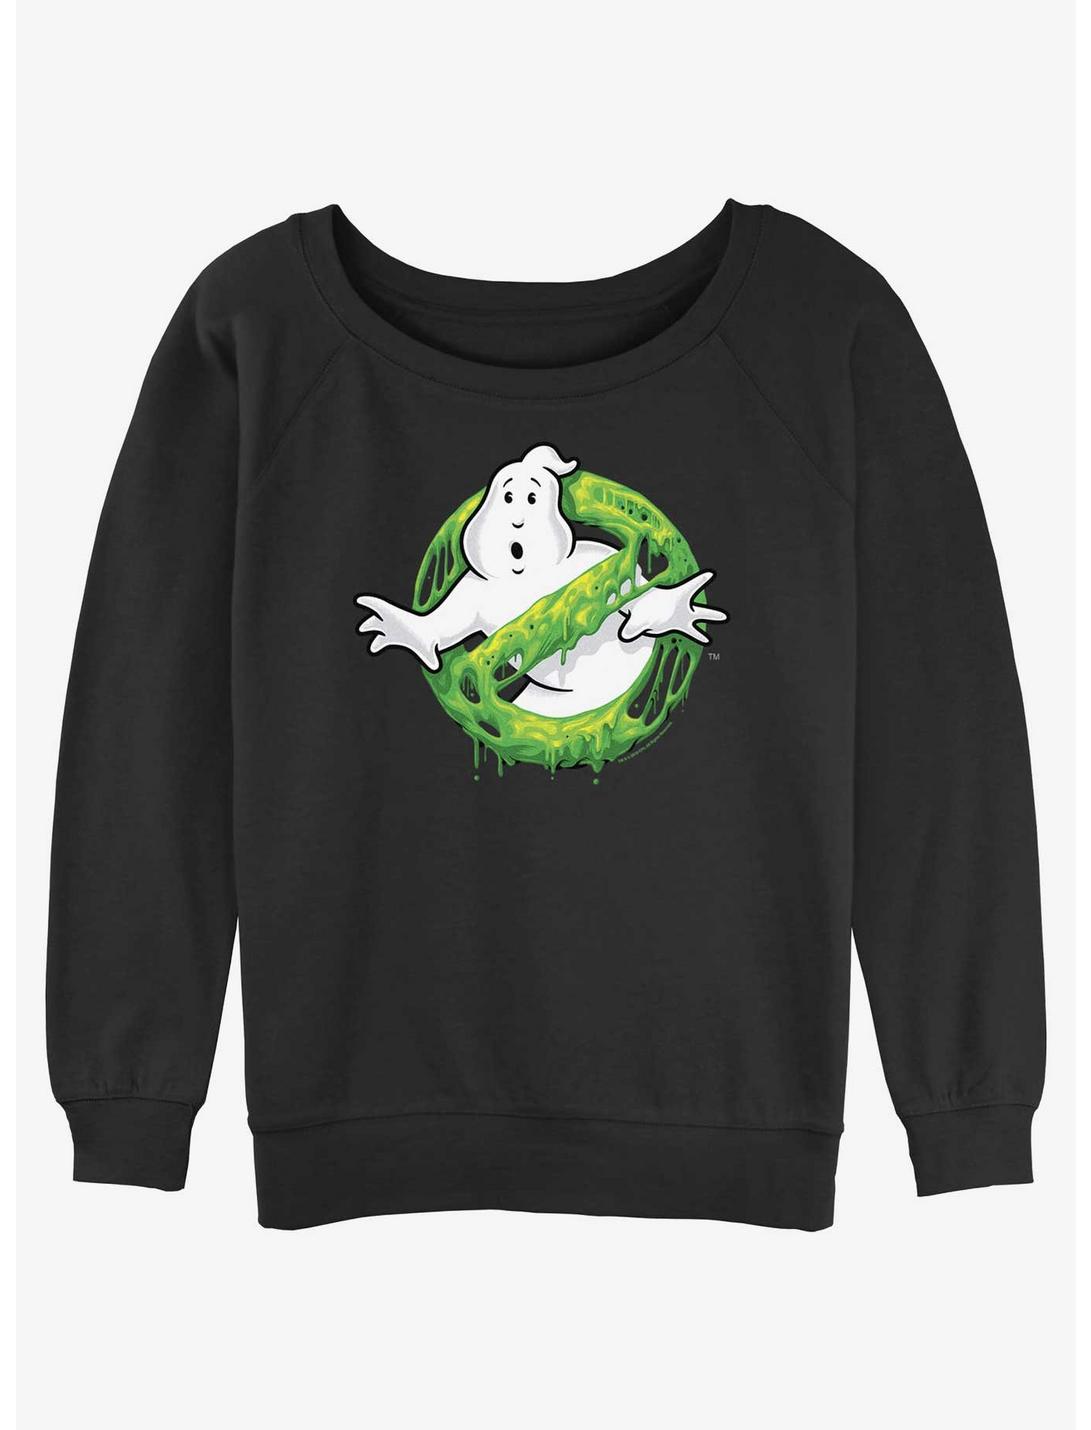 Ghostbusters Green Slime Logo Womens Slouchy Sweatshirt, BLACK, hi-res